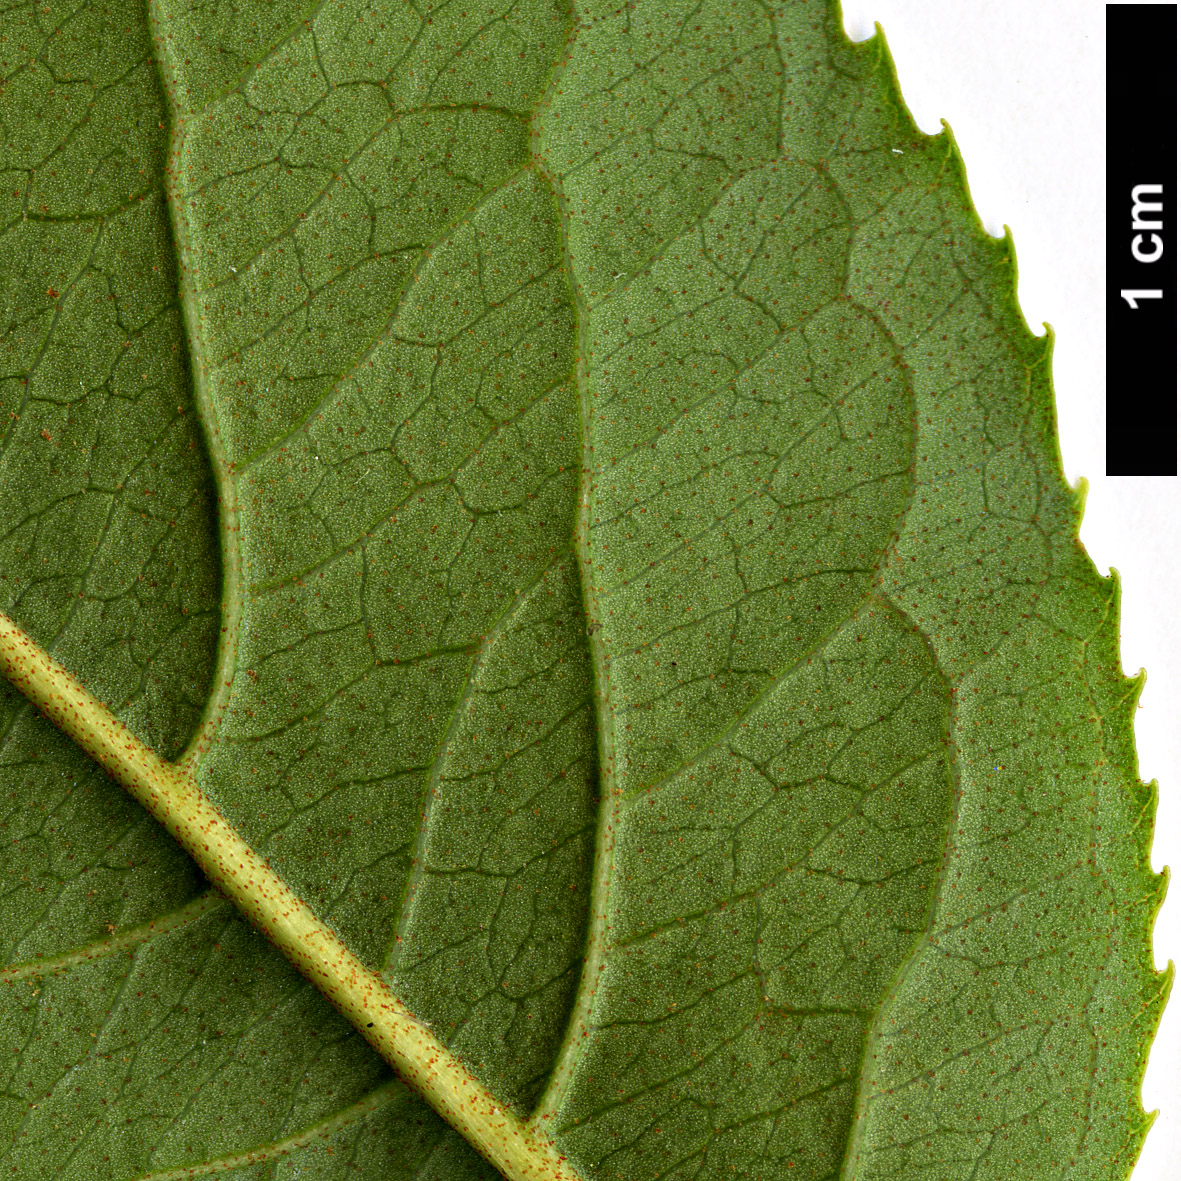 High resolution image: Family: Adoxaceae - Genus: Viburnum - Taxon: lentago